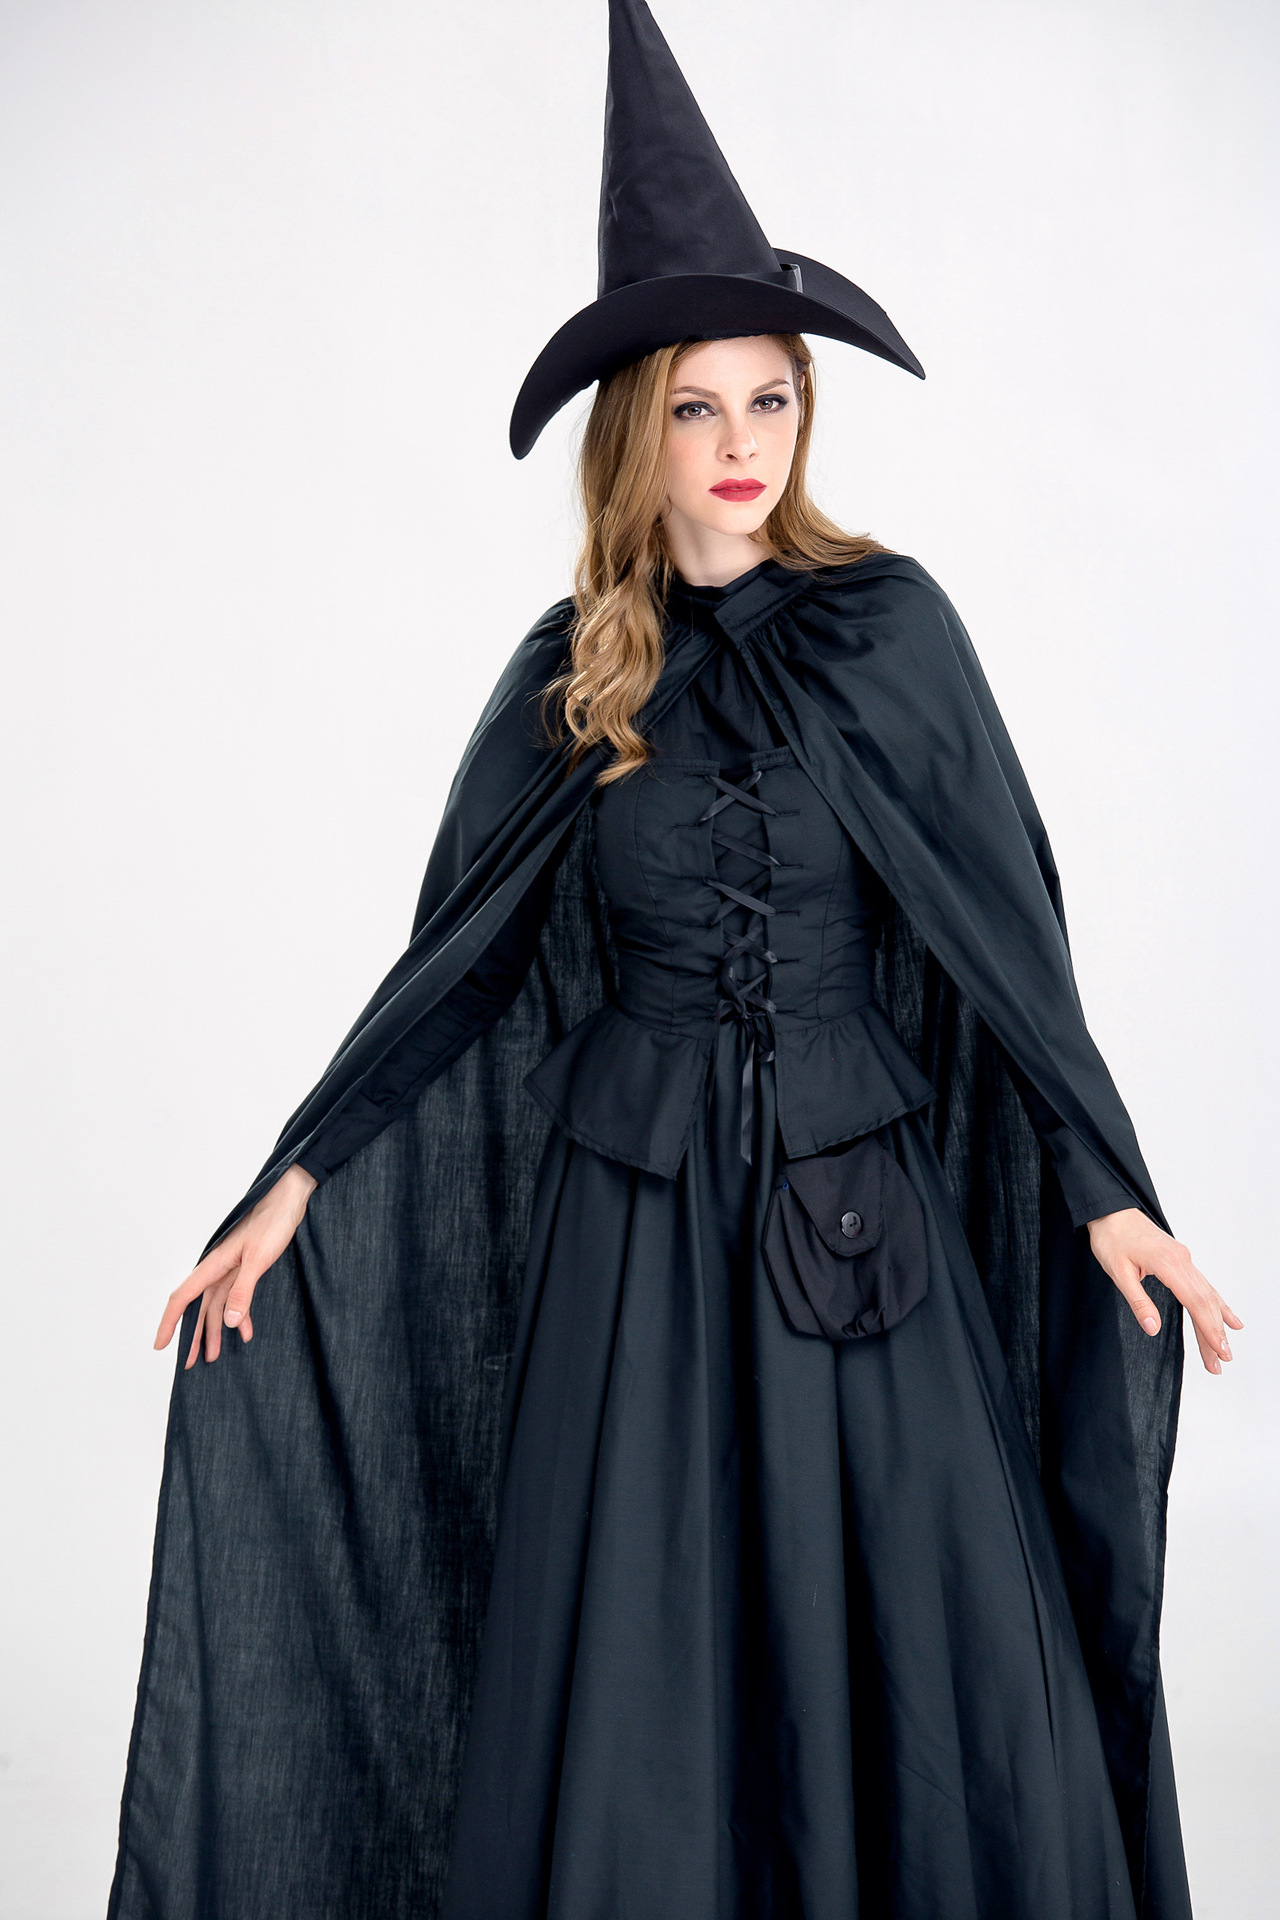 2017年万圣节新款霍格沃茨魔法学校教授巫师巫婆服装黑色女巫装